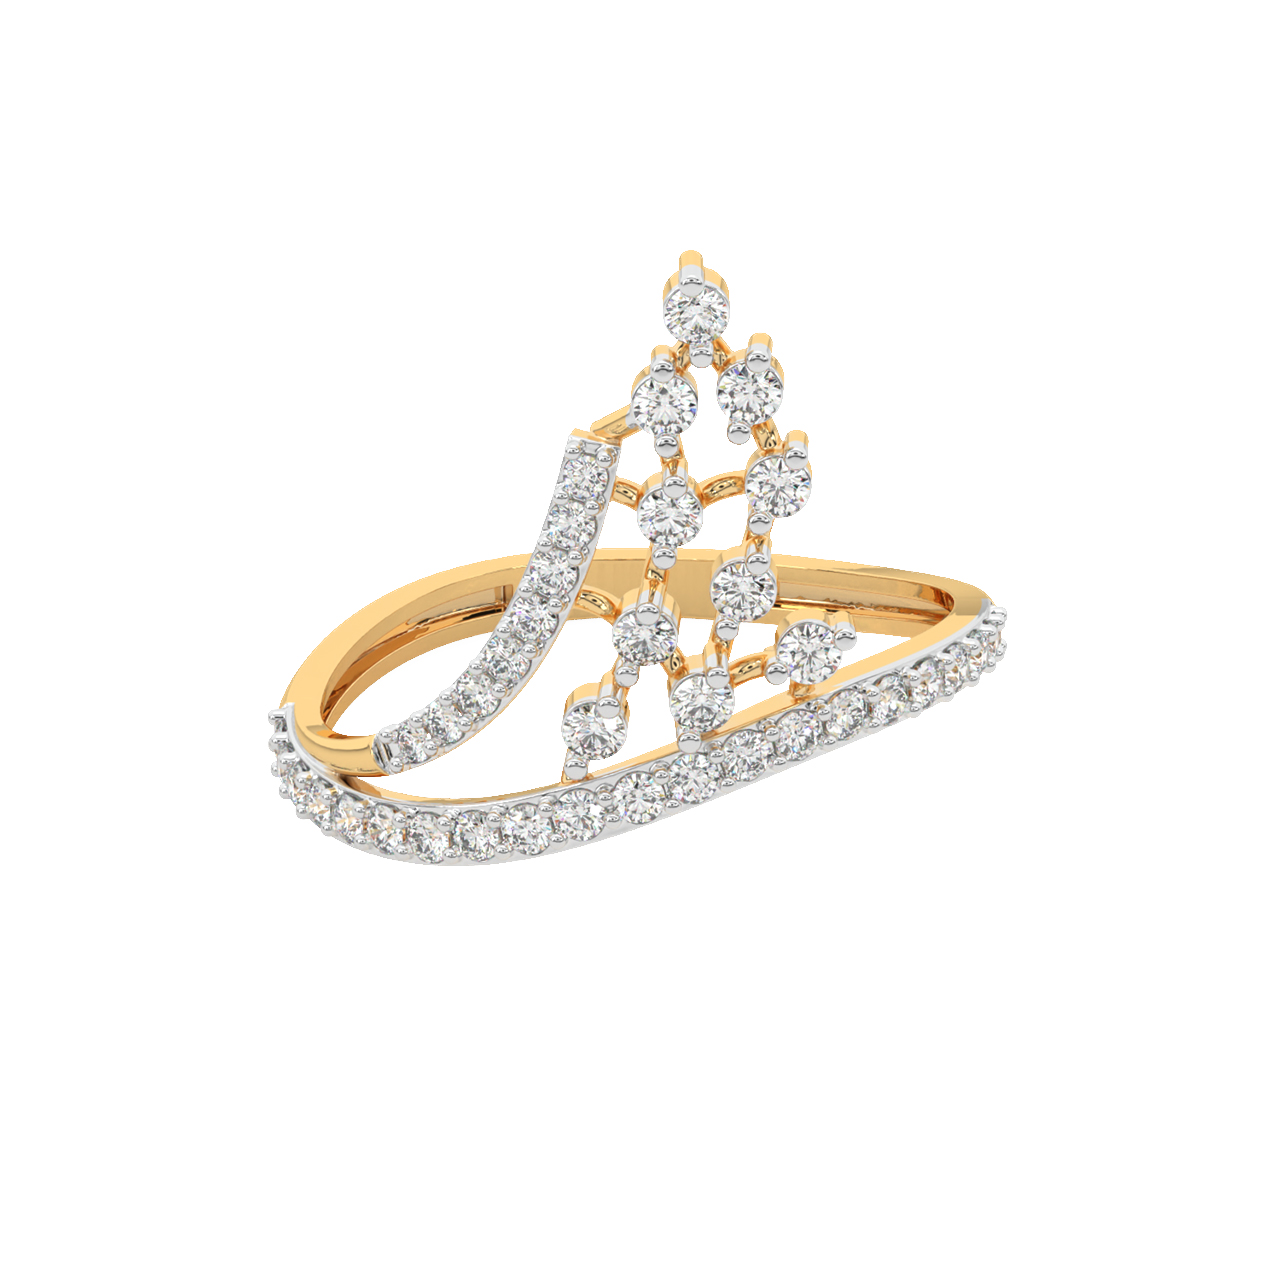 Glida Round Diamond Engagement Ring